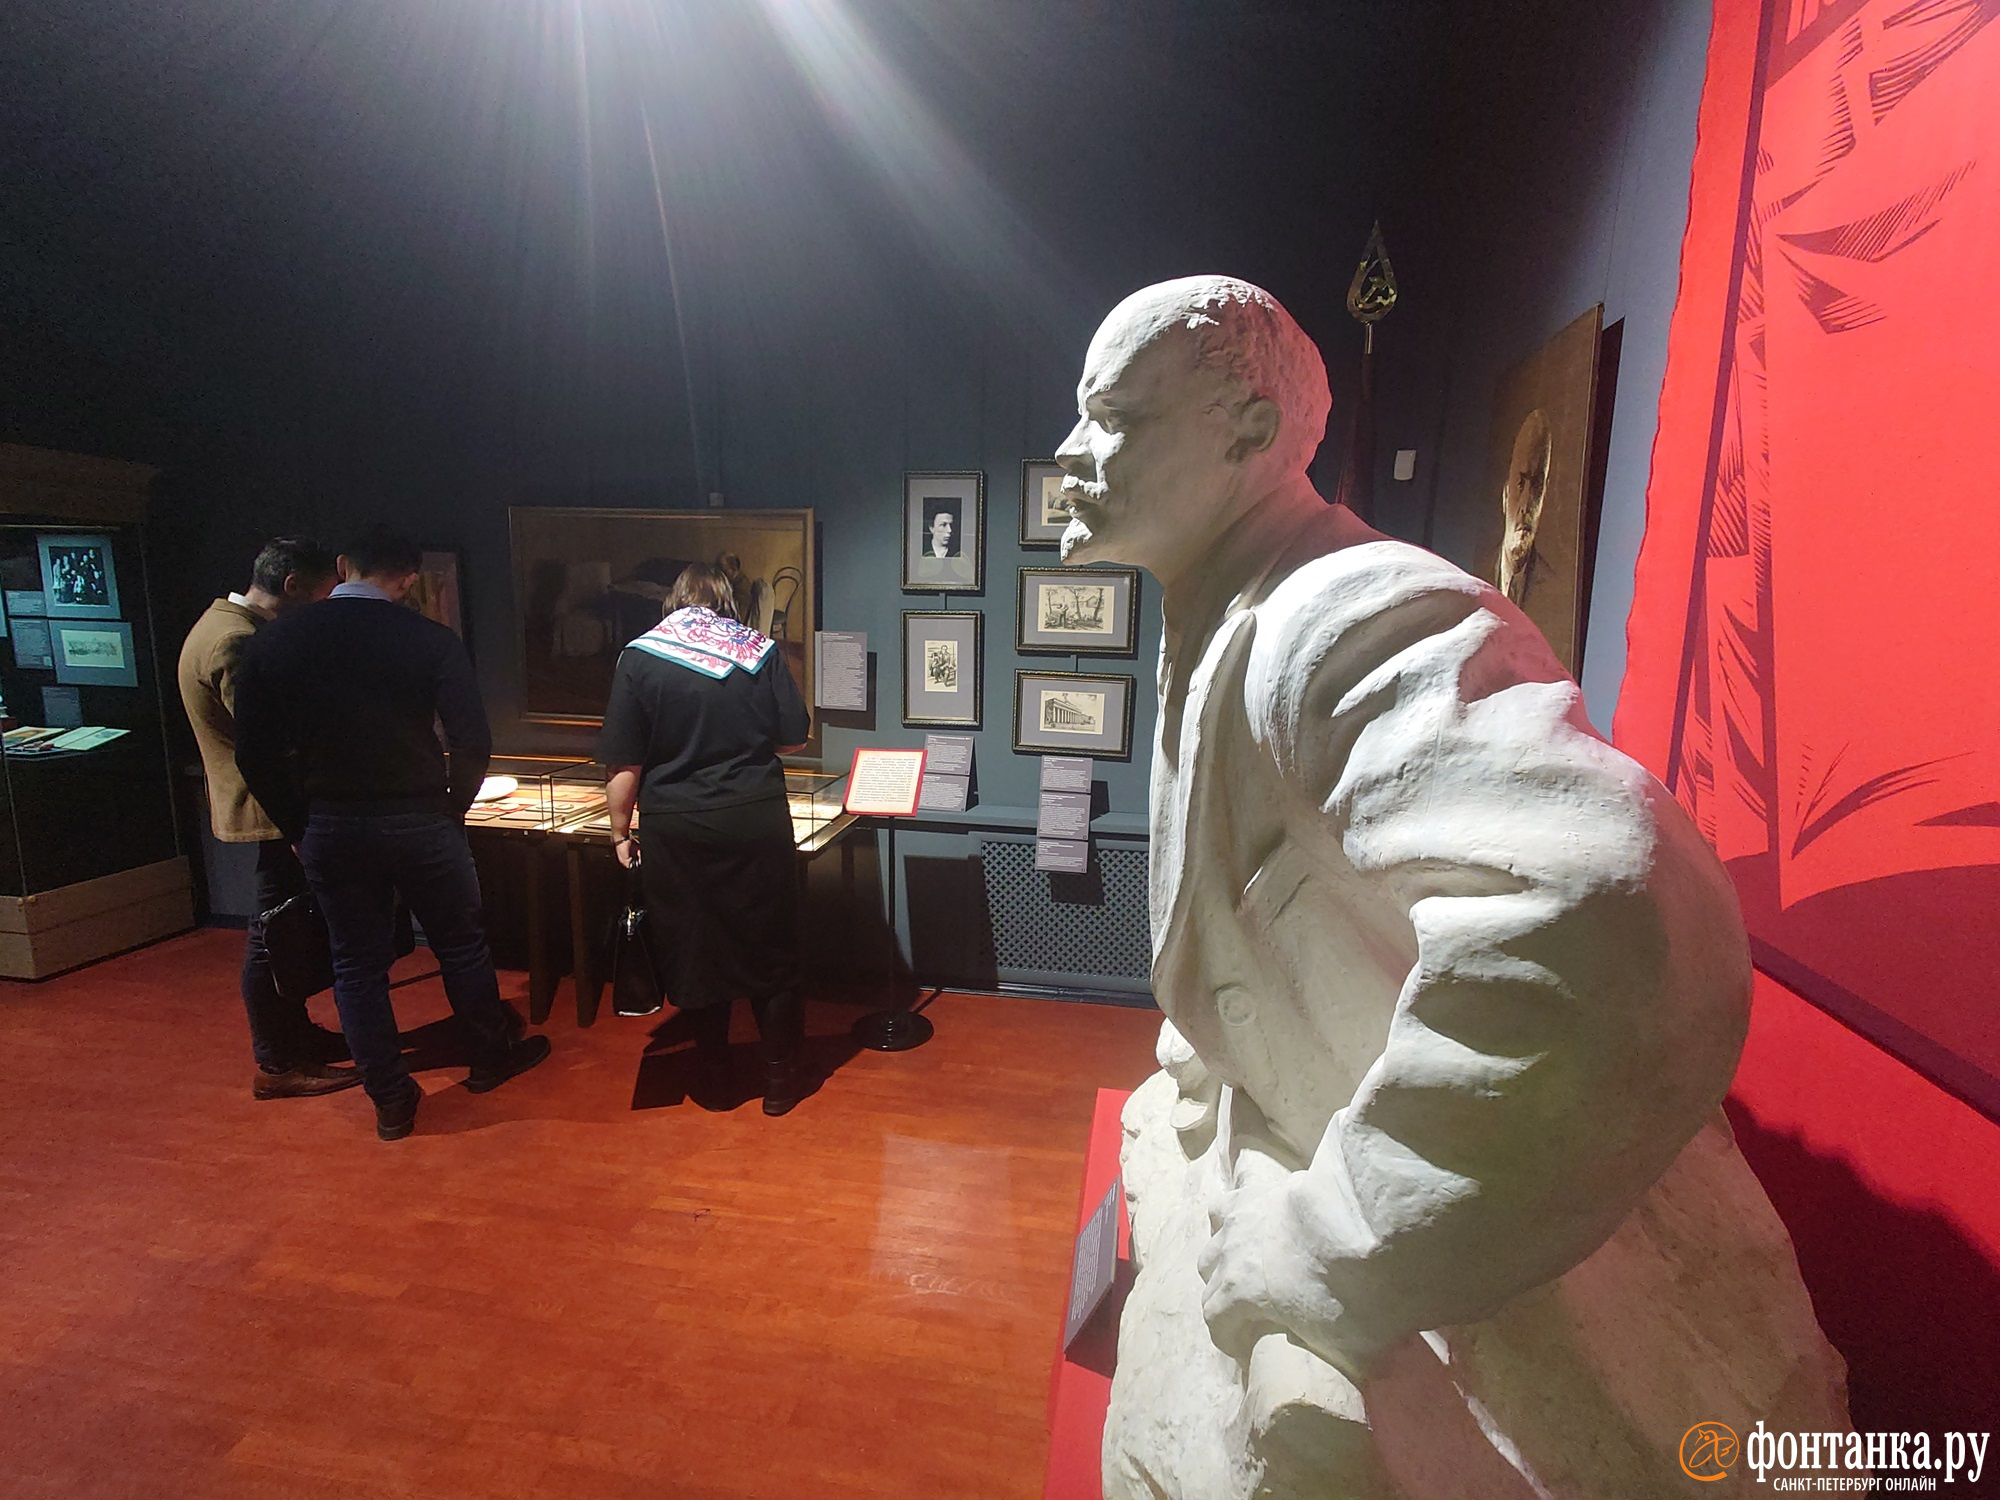 Ленин — трикстер и наш Люк Скайуокер: Музей истории религии открыл выставку к 100-летию со смерти вождя